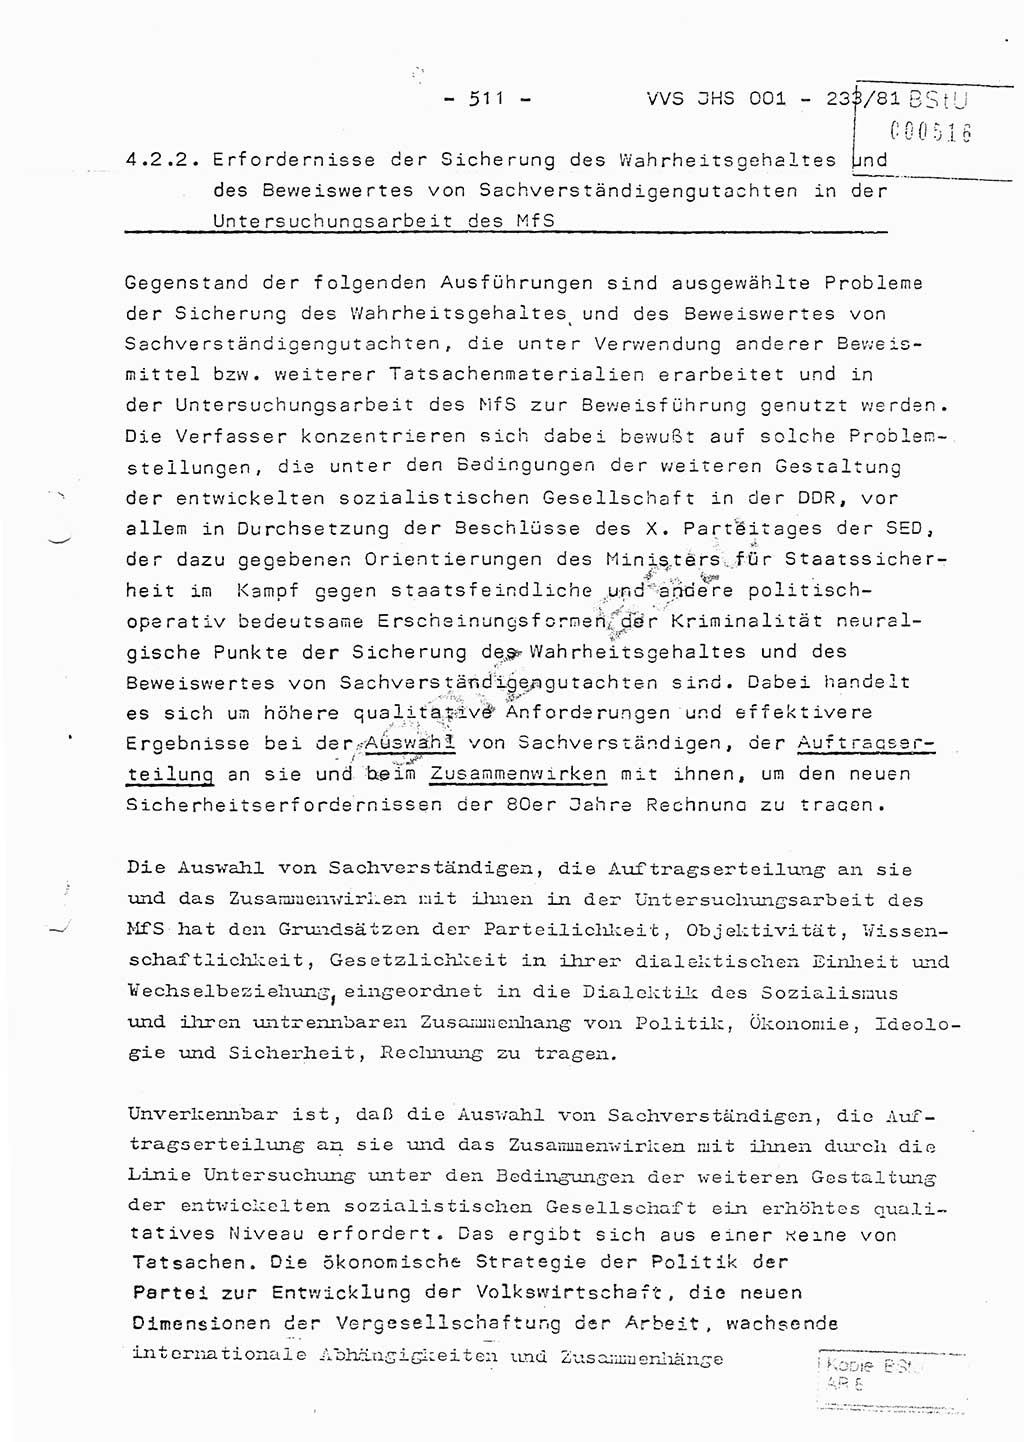 Dissertation Oberstleutnant Horst Zank (JHS), Oberstleutnant Dr. Karl-Heinz Knoblauch (JHS), Oberstleutnant Gustav-Adolf Kowalewski (HA Ⅸ), Oberstleutnant Wolfgang Plötner (HA Ⅸ), Ministerium für Staatssicherheit (MfS) [Deutsche Demokratische Republik (DDR)], Juristische Hochschule (JHS), Vertrauliche Verschlußsache (VVS) o001-233/81, Potsdam 1981, Blatt 511 (Diss. MfS DDR JHS VVS o001-233/81 1981, Bl. 511)